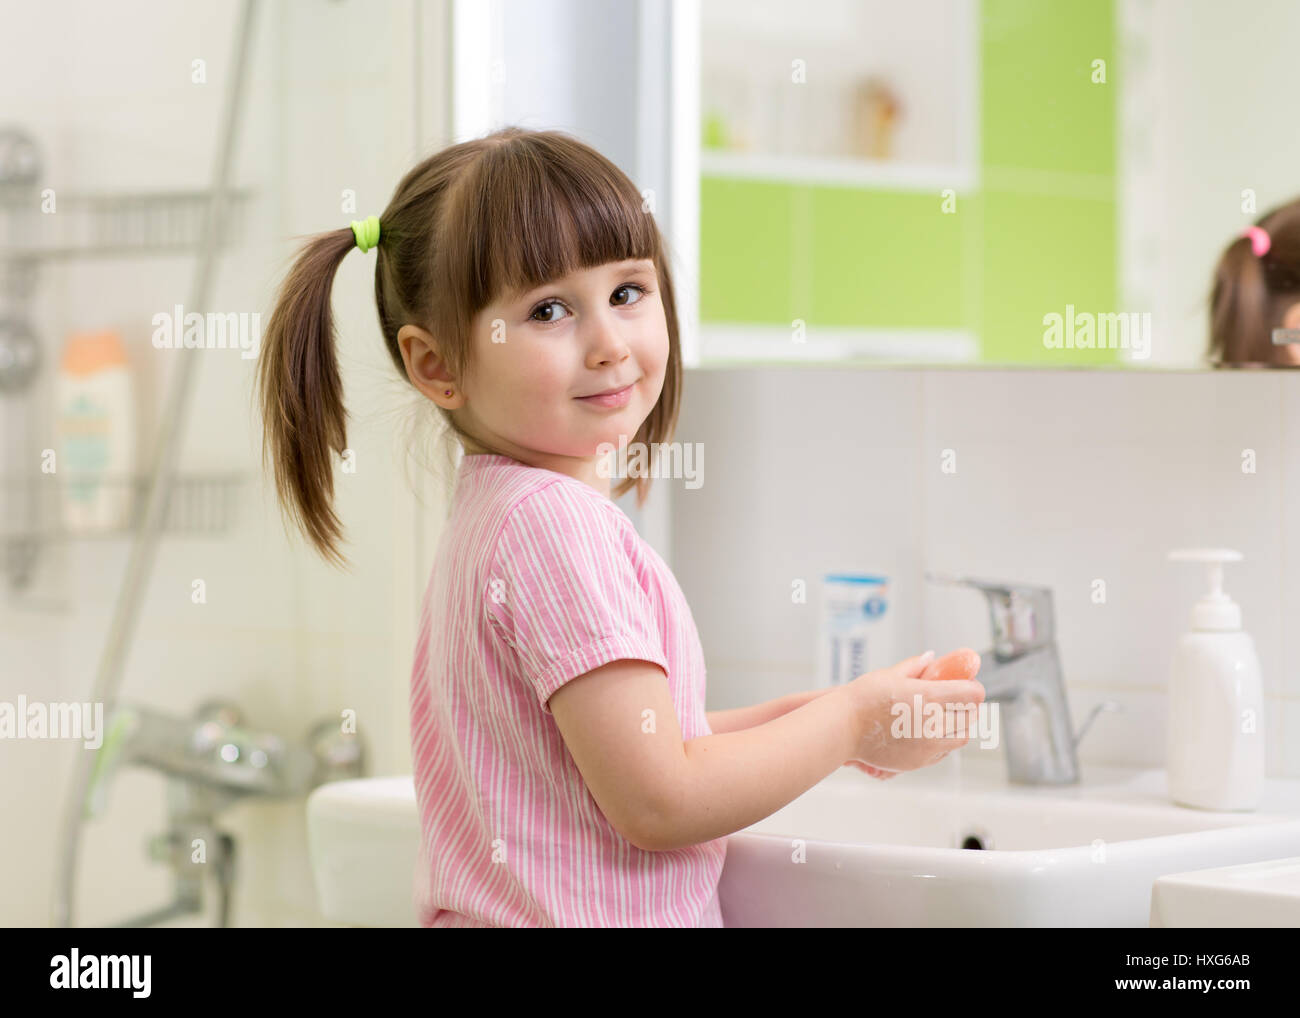 Cute kid girl avec queue en peignoir rose à laver ses mains. Banque D'Images